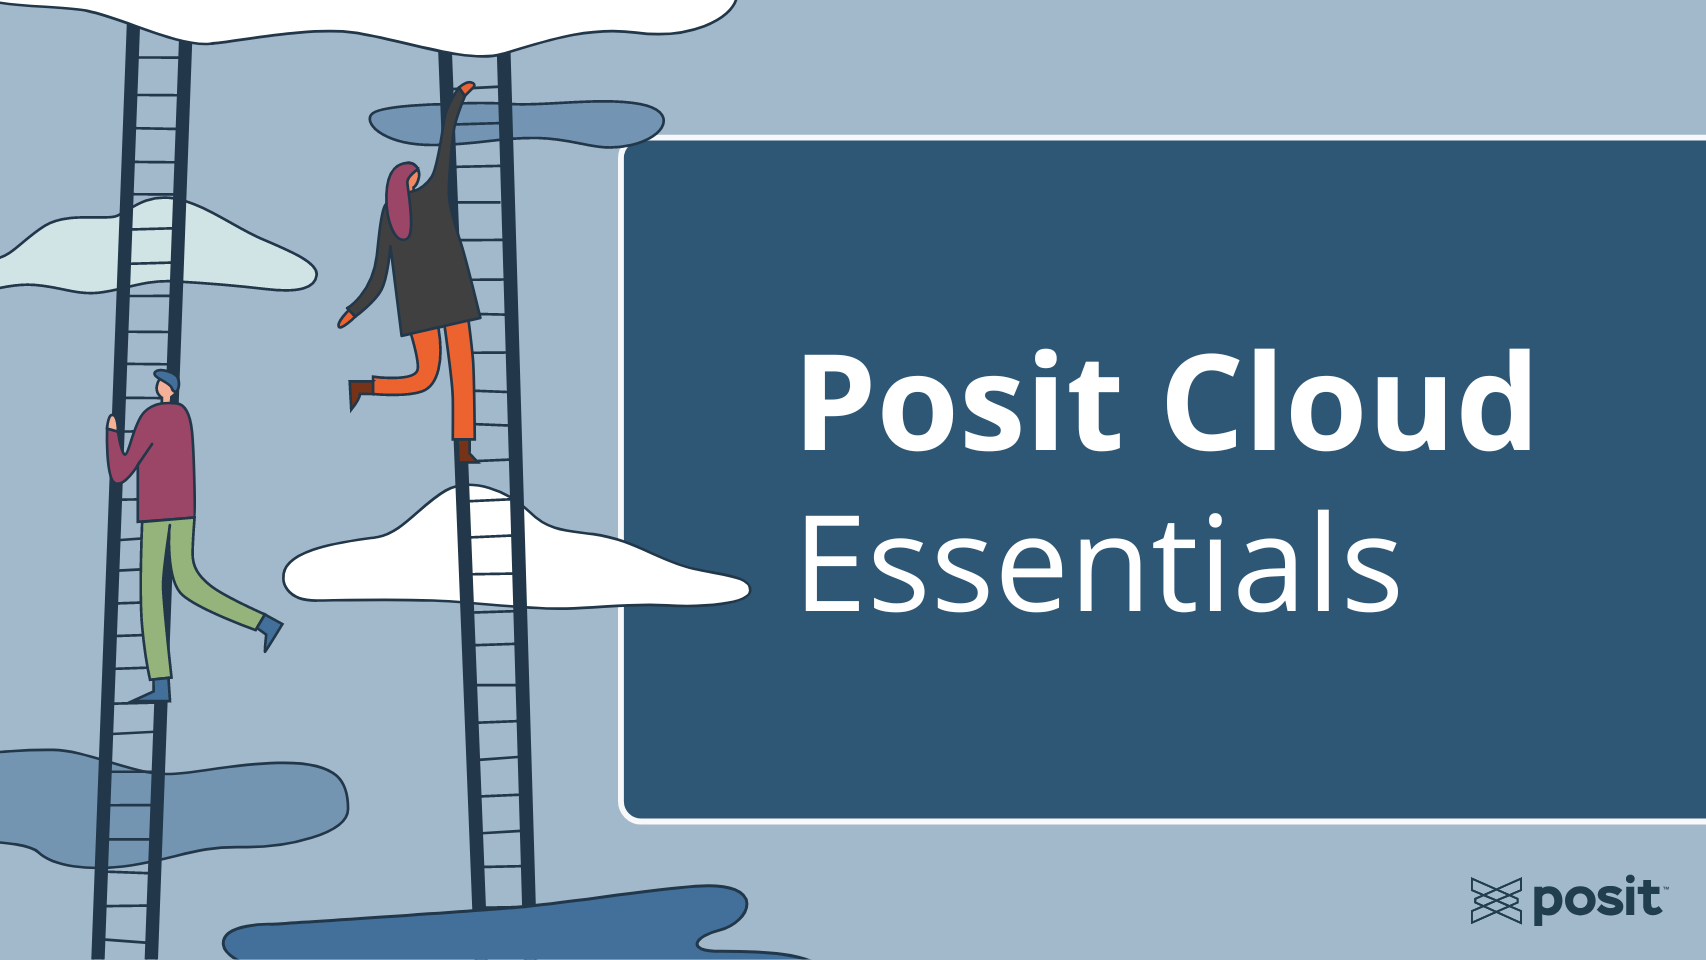 Posit Cloud Essentials